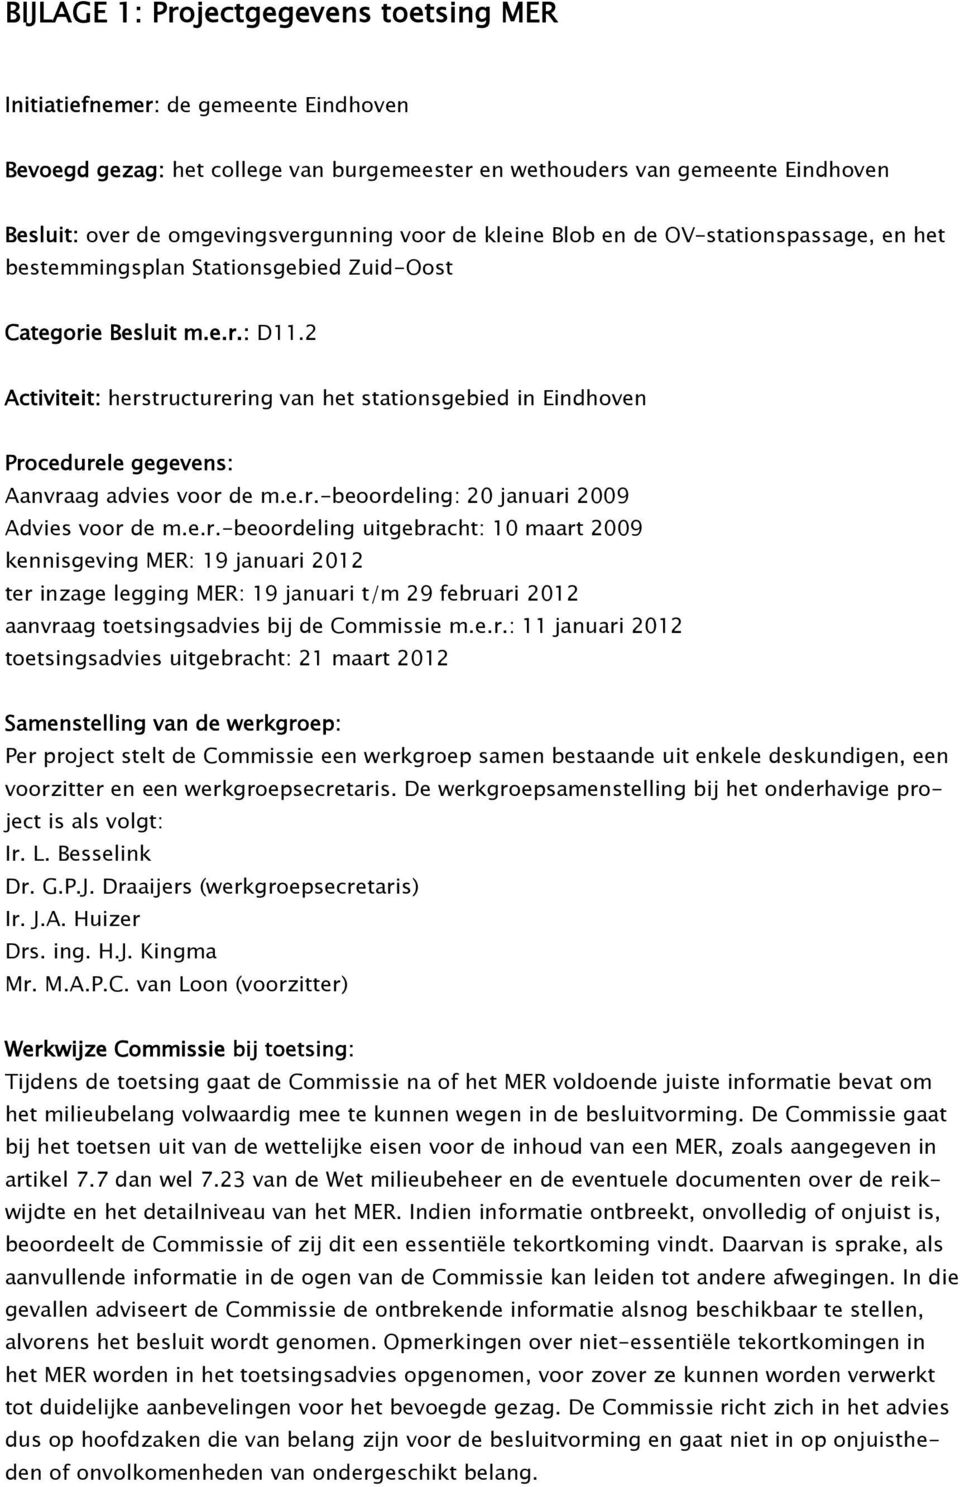 2 Activiteit: herstructurering van het stationsgebied in Eindhoven Procedurele gegevens: Aanvraag advies voor de m.e.r.-beoordeling: 20 januari 2009 Advies voor de m.e.r.-beoordeling uitgebracht: 10 maart 2009 kennisgeving MER: 19 januari 2012 ter inzage legging MER: 19 januari t/m 29 februari 2012 aanvraag toetsingsadvies bij de Commissie m.